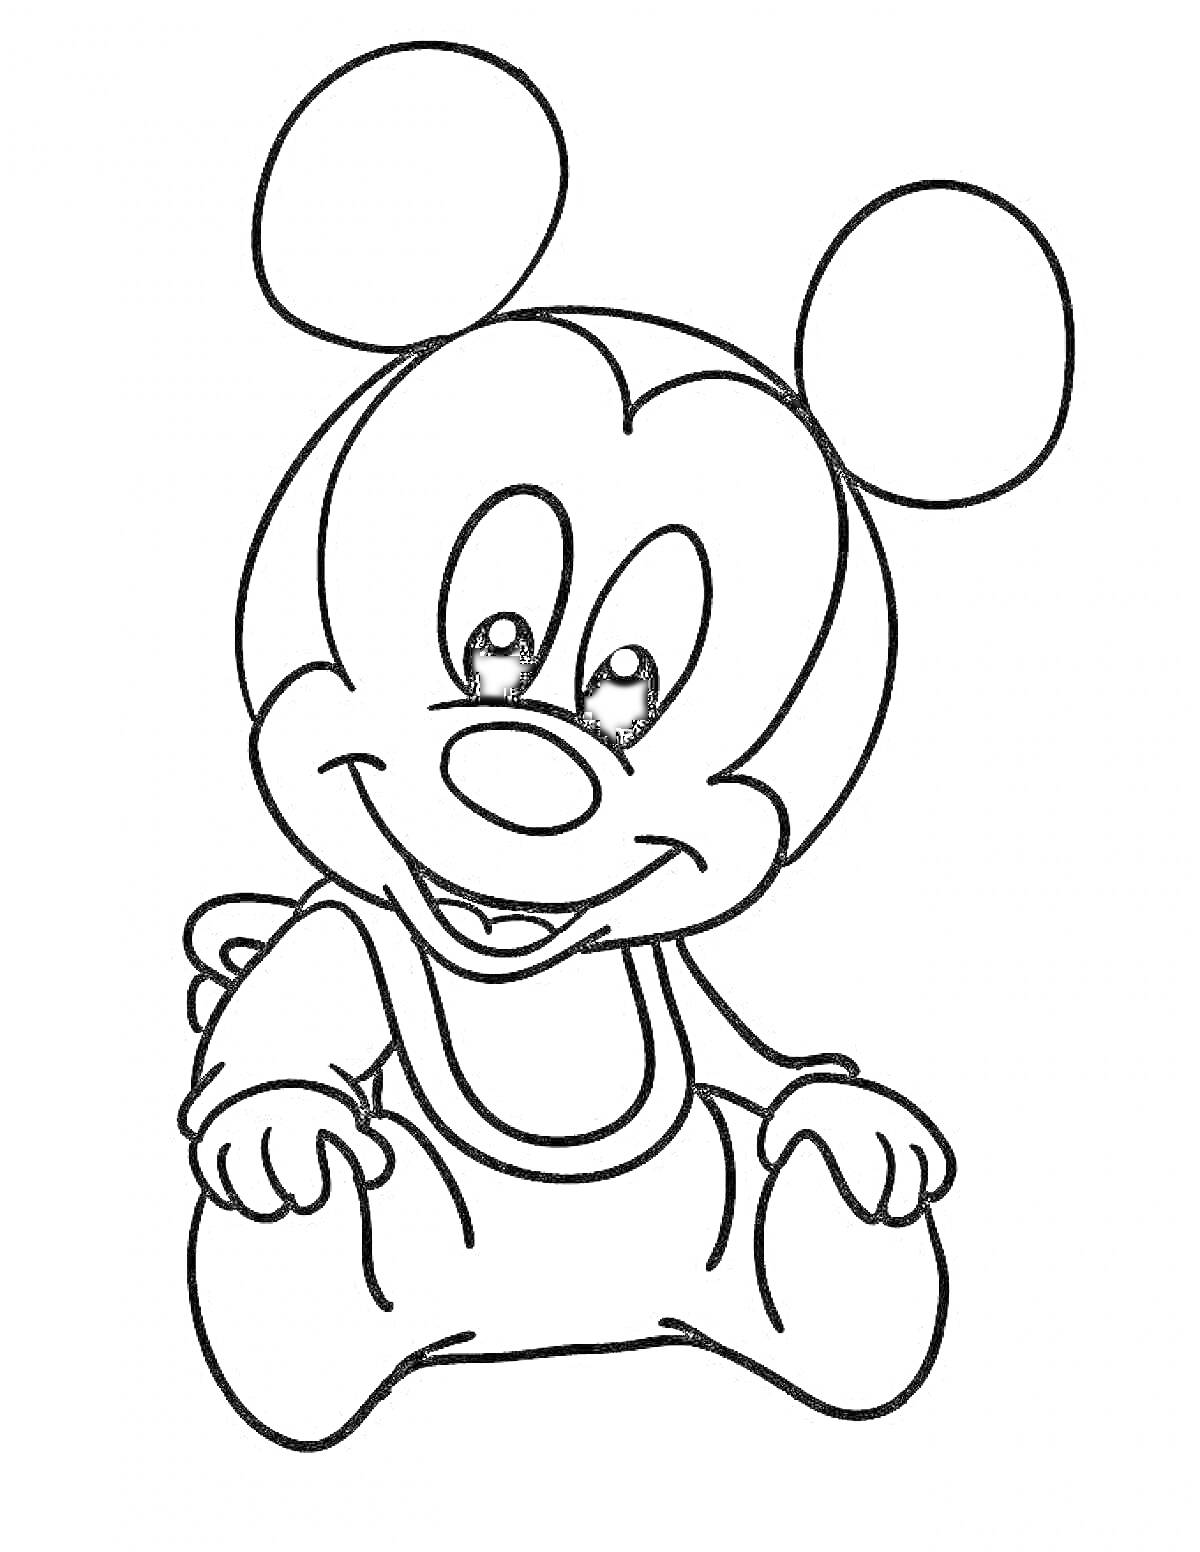 Раскраска Сидящий мультяшный мышонок с большими ушами и комбинезоном.